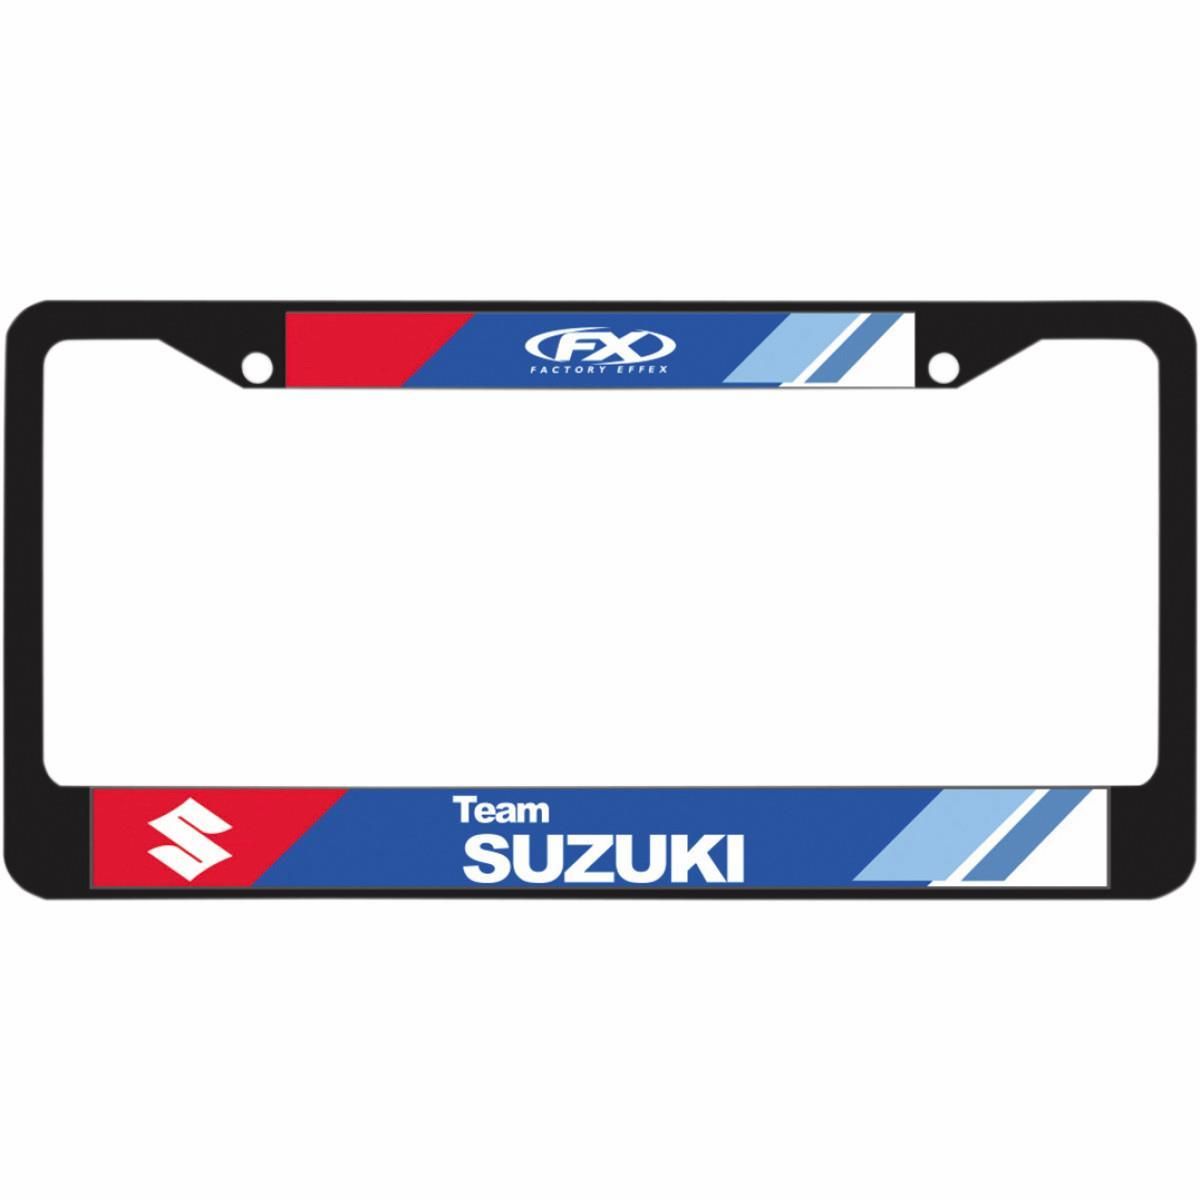 2545-FACTORY-EFF-19-45400 License Plate Frames - Suzuki